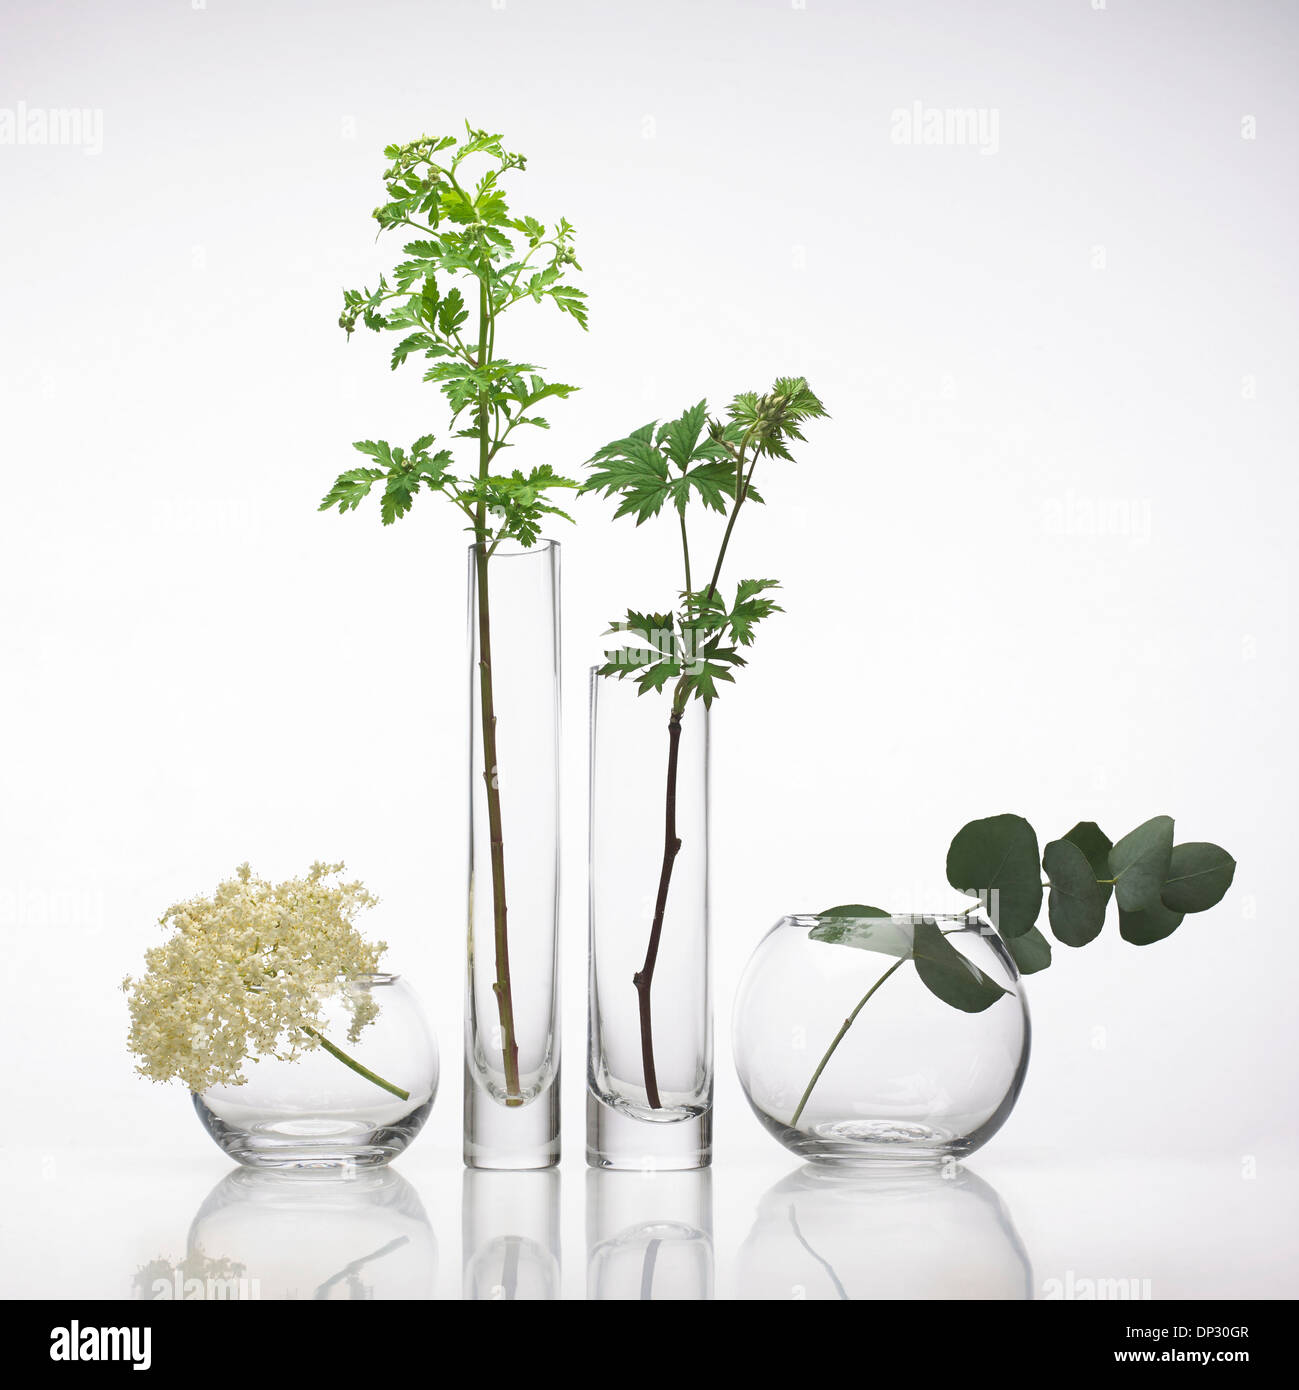 Plantas medicinales, imagen conceptual Foto de stock